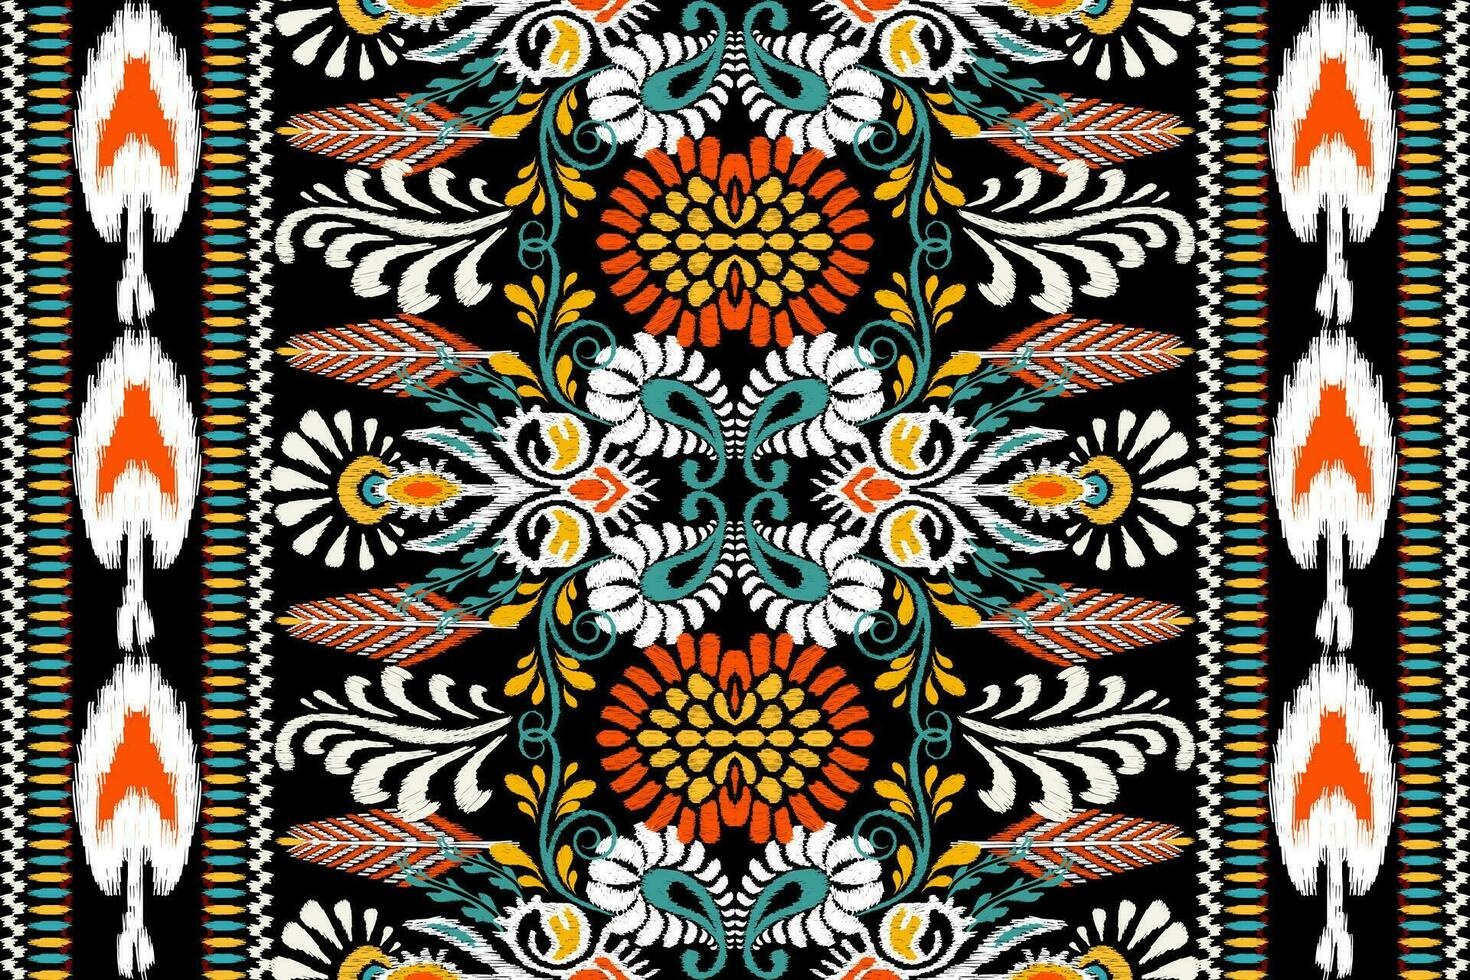 ikat bloemen paisley borduurwerk Aan zwart achtergrond.ikat etnisch oosters patroon traditioneel.azteken stijl abstract vector illustratie.ontwerp voor textuur,stof,kleding,verpakking,decoratie,sjaal,tapijt